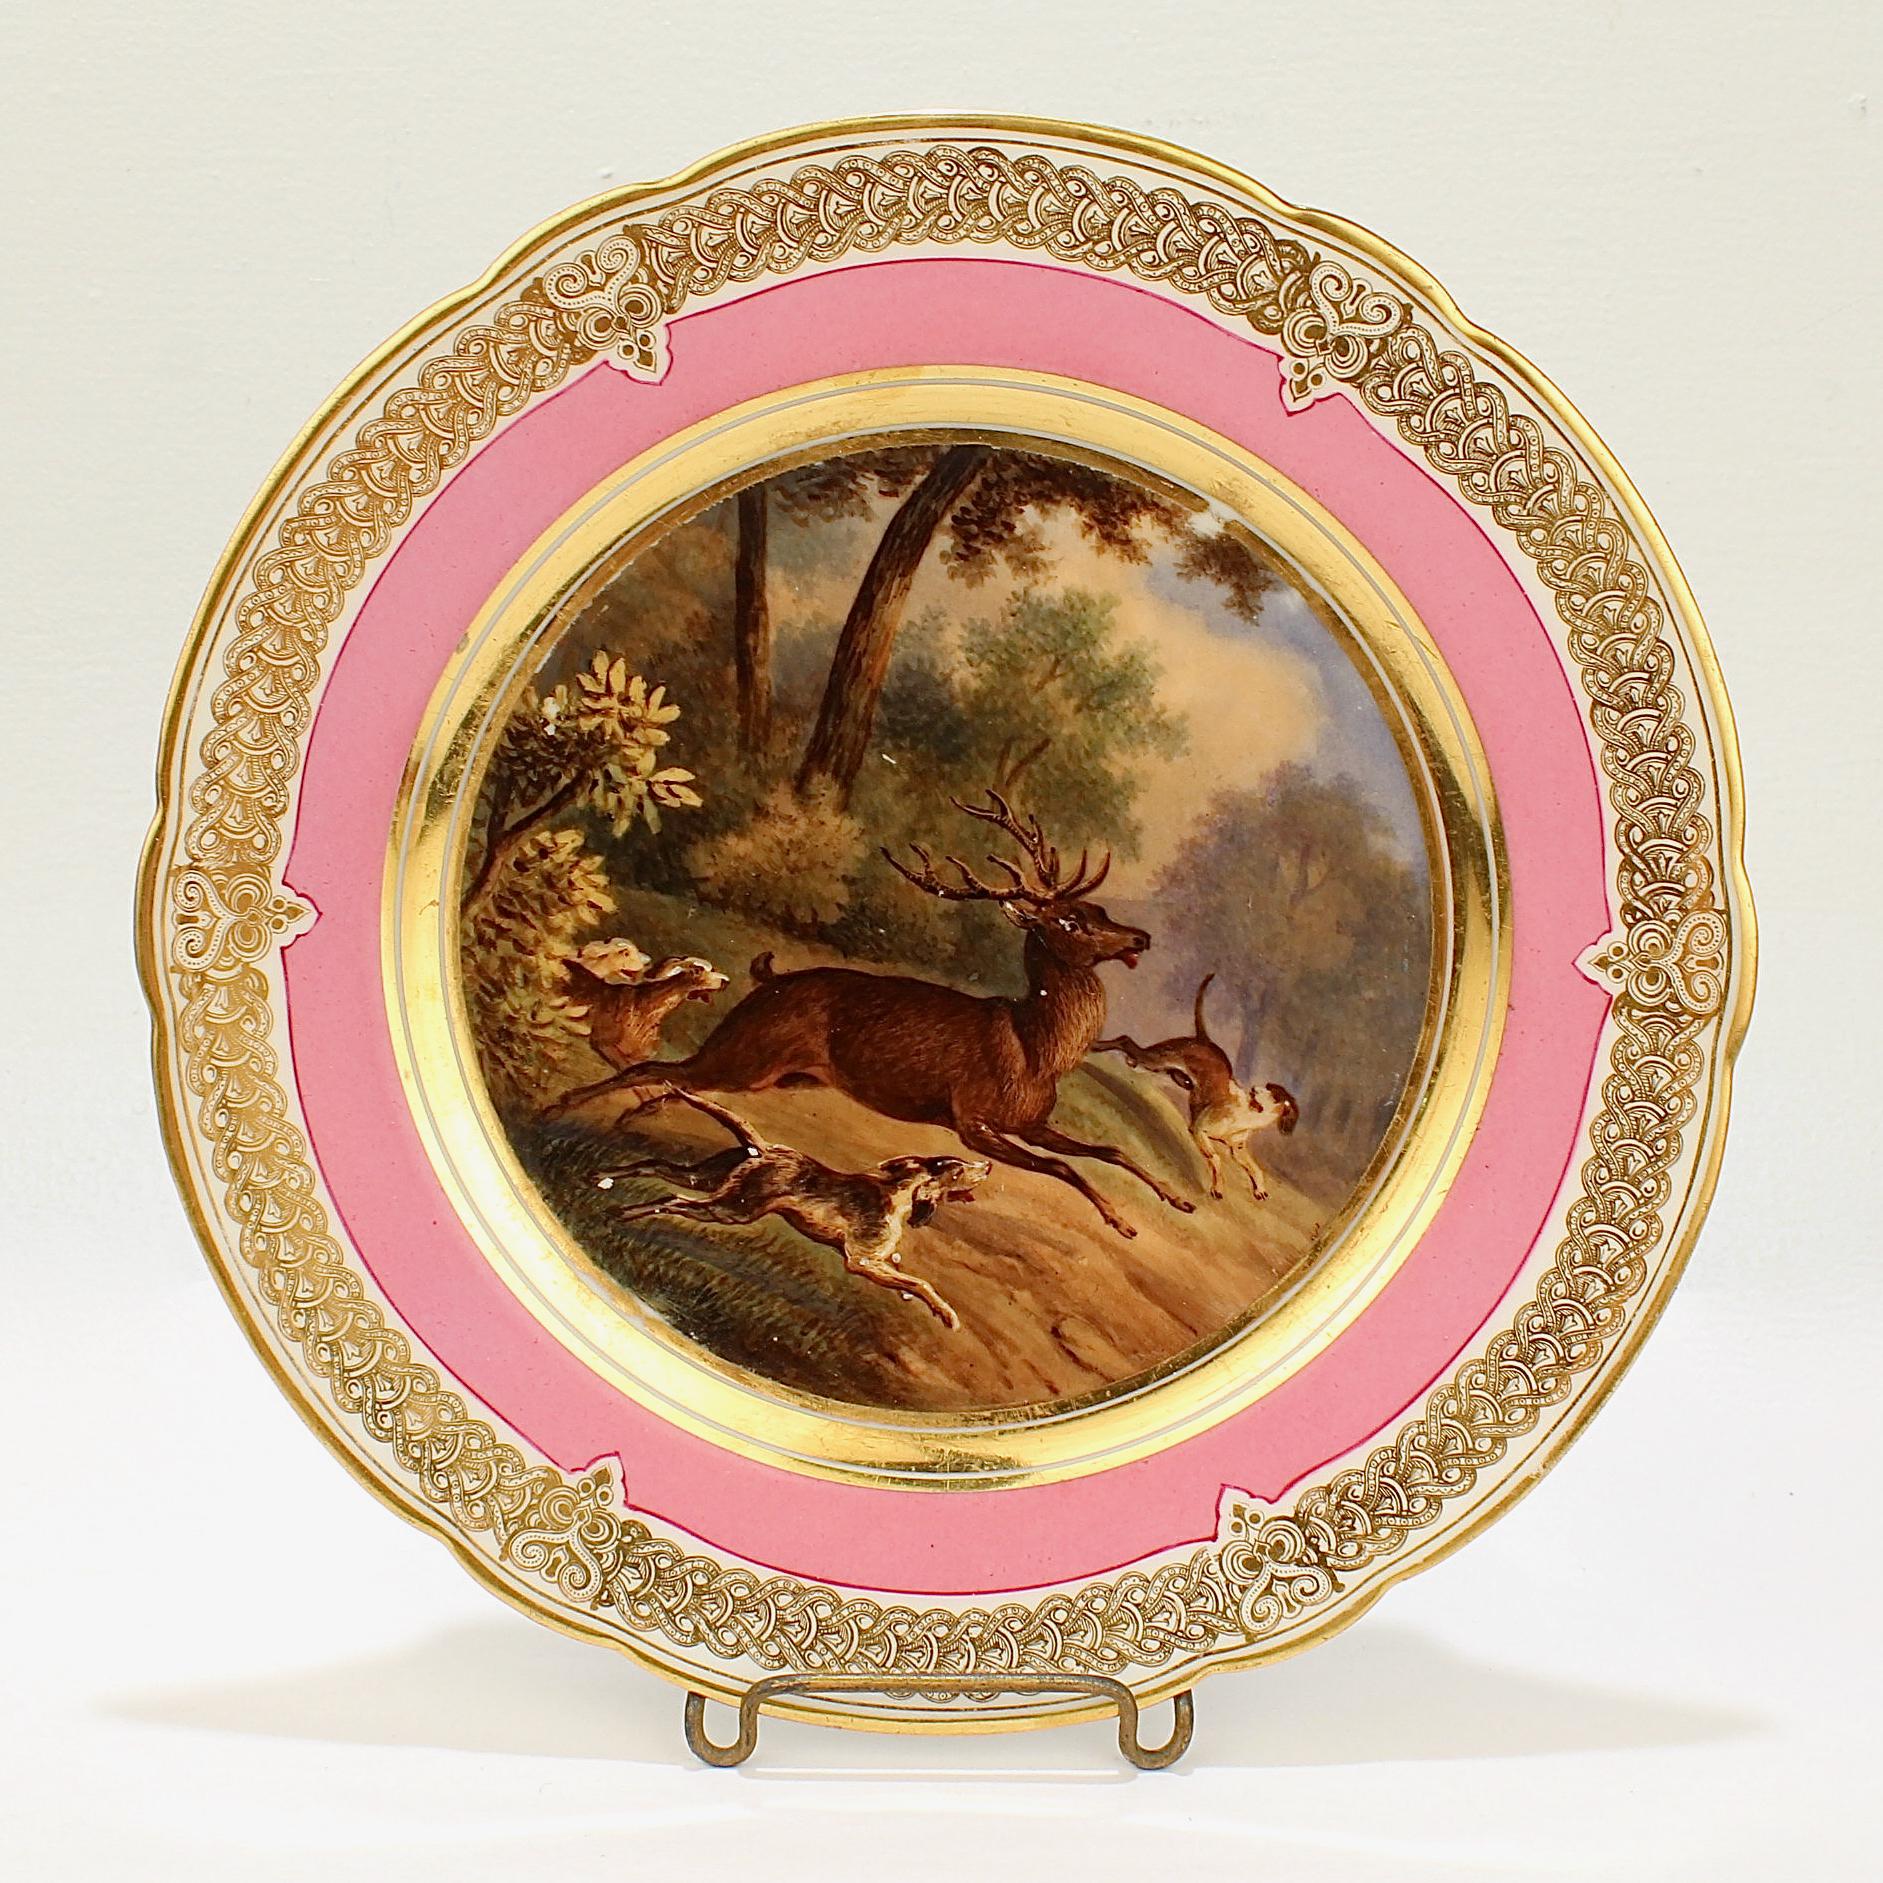 Une magnifique assiette en porcelaine de Paris du 19ème siècle.

Avec une scène peinte à la main d'une scène de chasse dans un paysage bucolique comprenant un grand mâle (10 points) et 3 chiens de chasse à la poursuite. 

Elle présente une riche